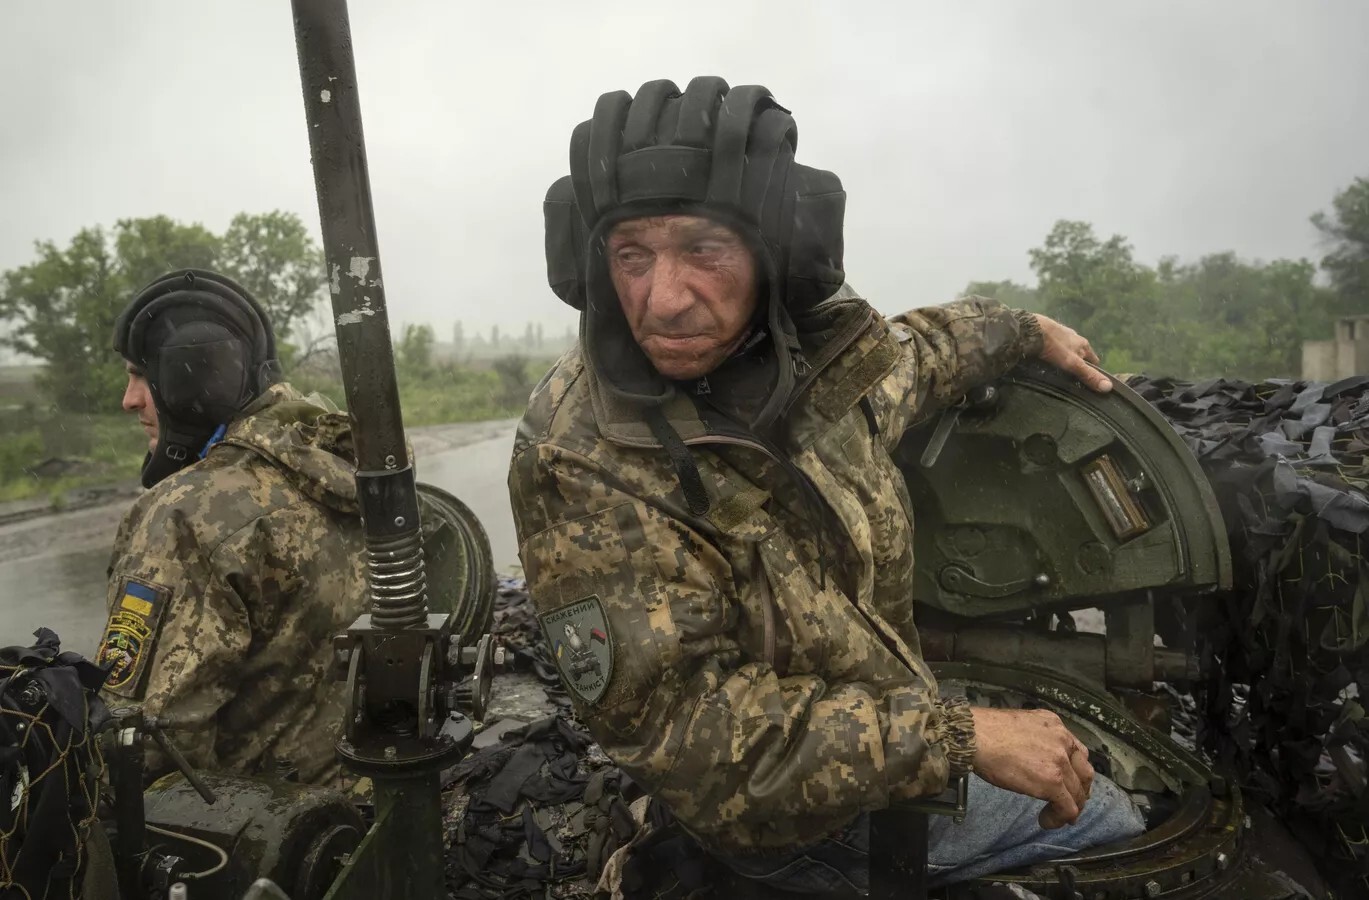 أسير أوكراني: نظام كييف يخدع المعفيين من الخدمة ويزج بهم في هجومه المضاد